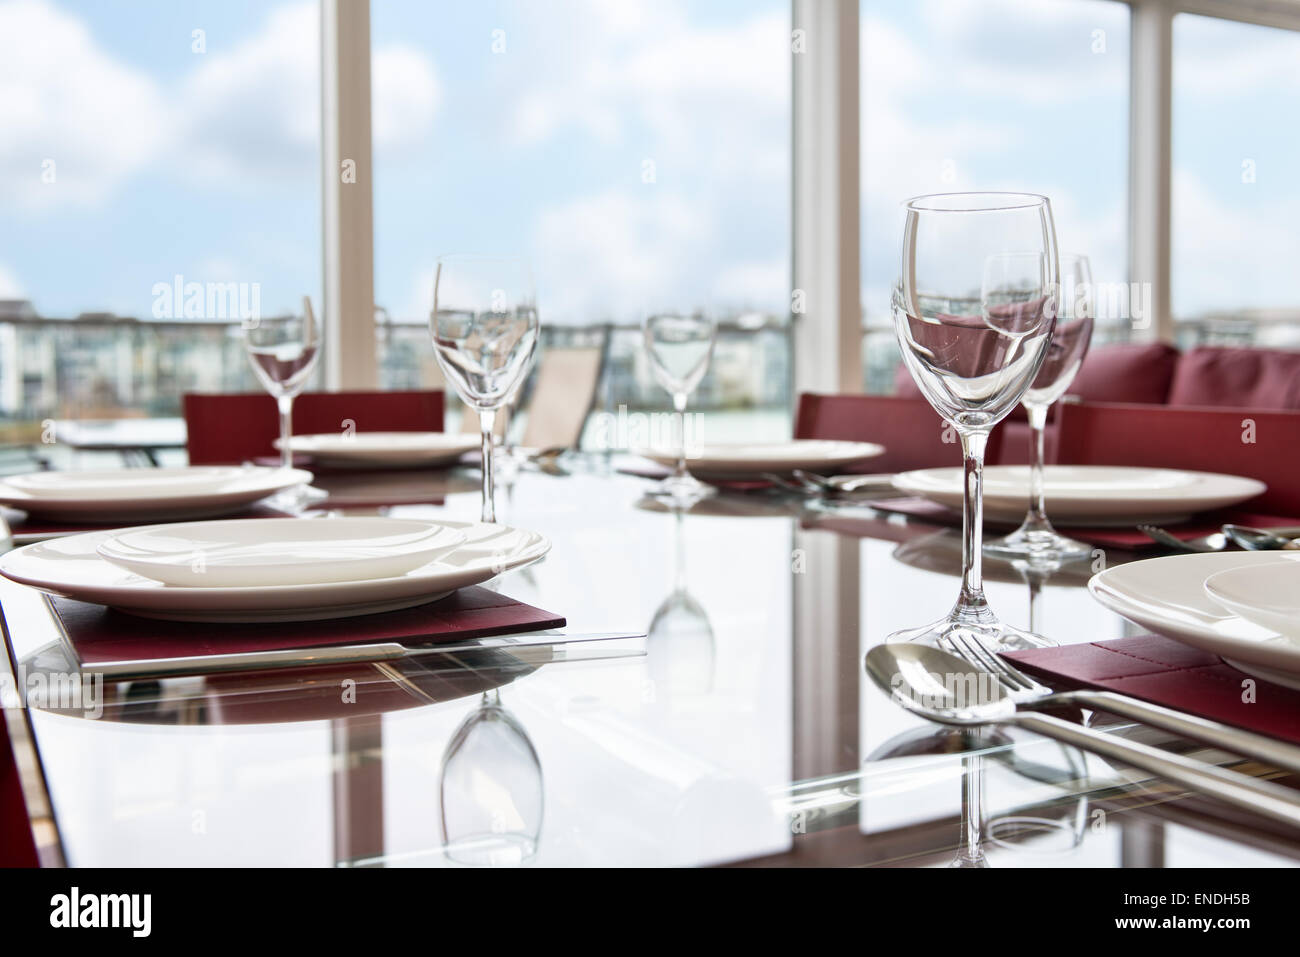 Un vetro tavolo da pranzo insieme con le regolazioni del posto, bicchieri da vino & Piastre per un pasto di festa Foto Stock